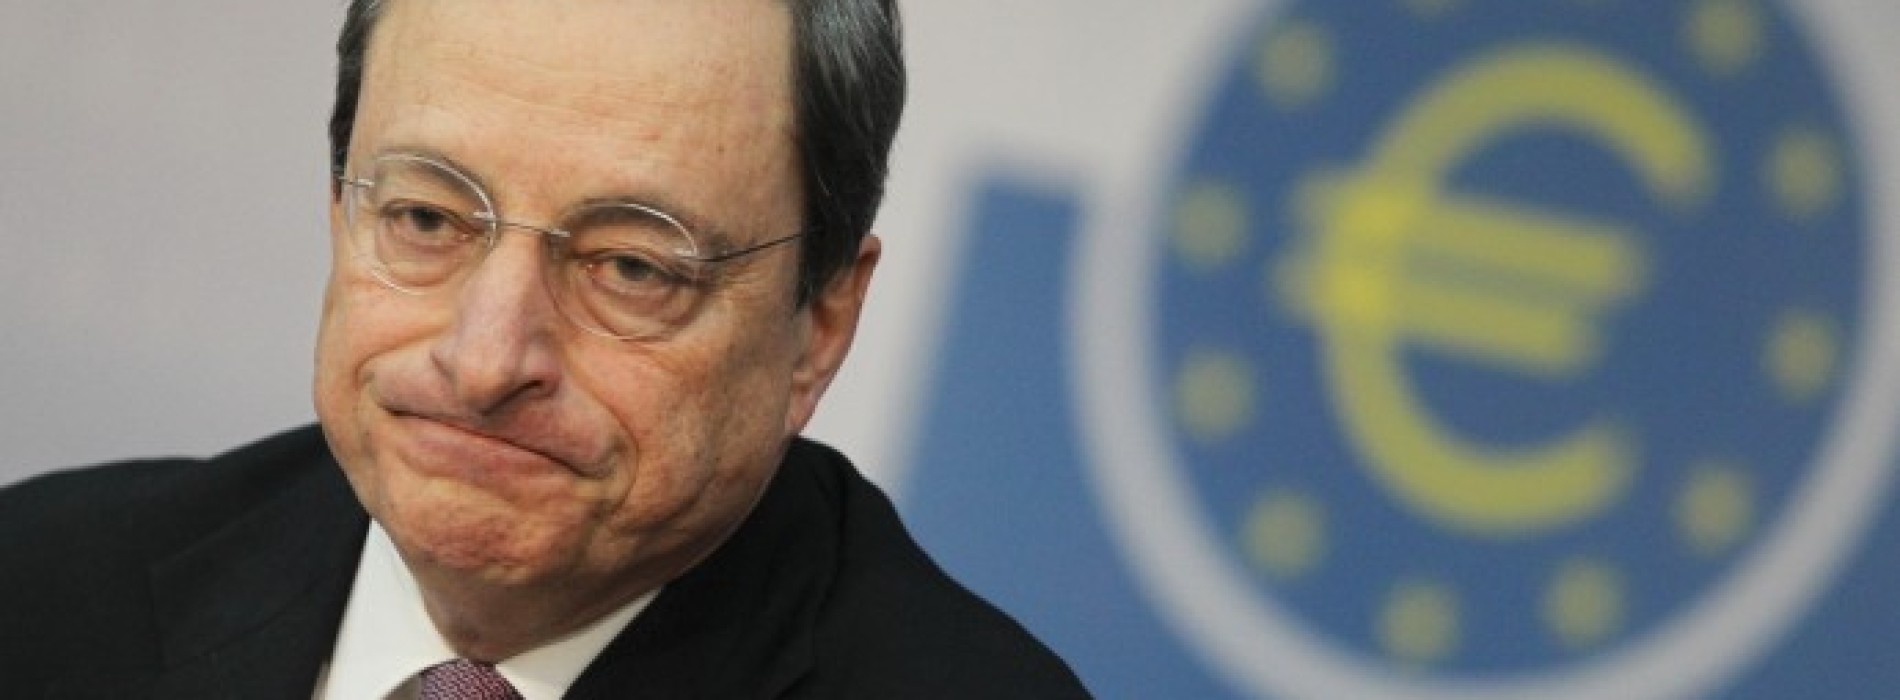 Draghi opodatkował banki